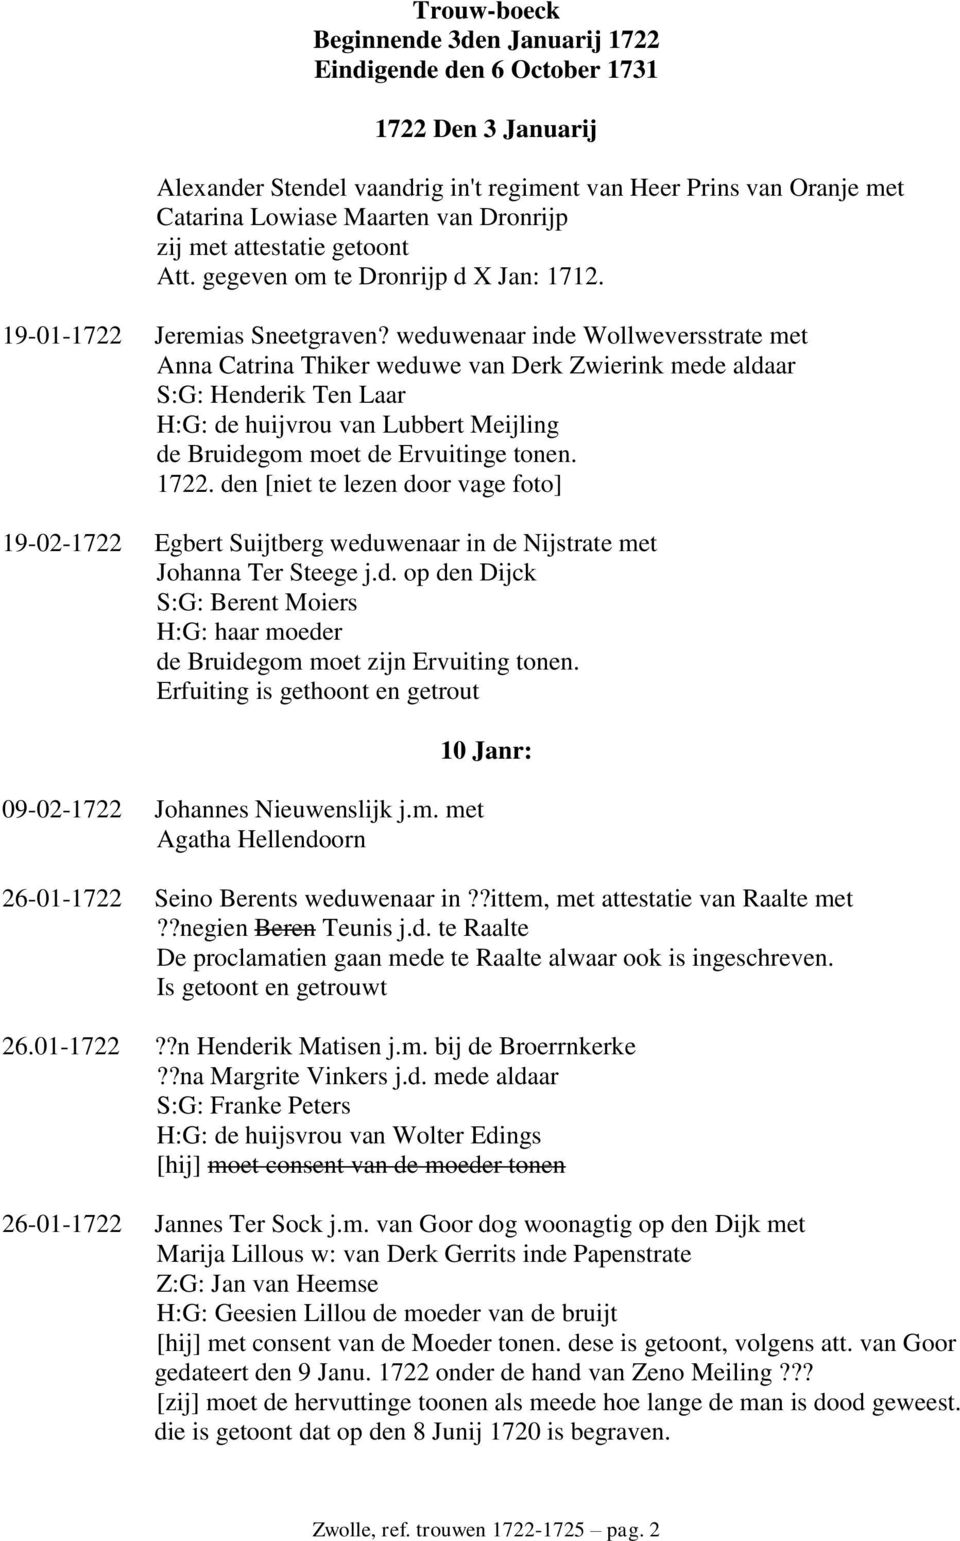 weduwenaar inde Wollweversstrate met Anna Catrina Thiker weduwe van Derk Zwierink mede aldaar S:G: Henderik Ten Laar H:G: de huijvrou van Lubbert Meijling de Bruidegom moet de Ervuitinge tonen. 1722.